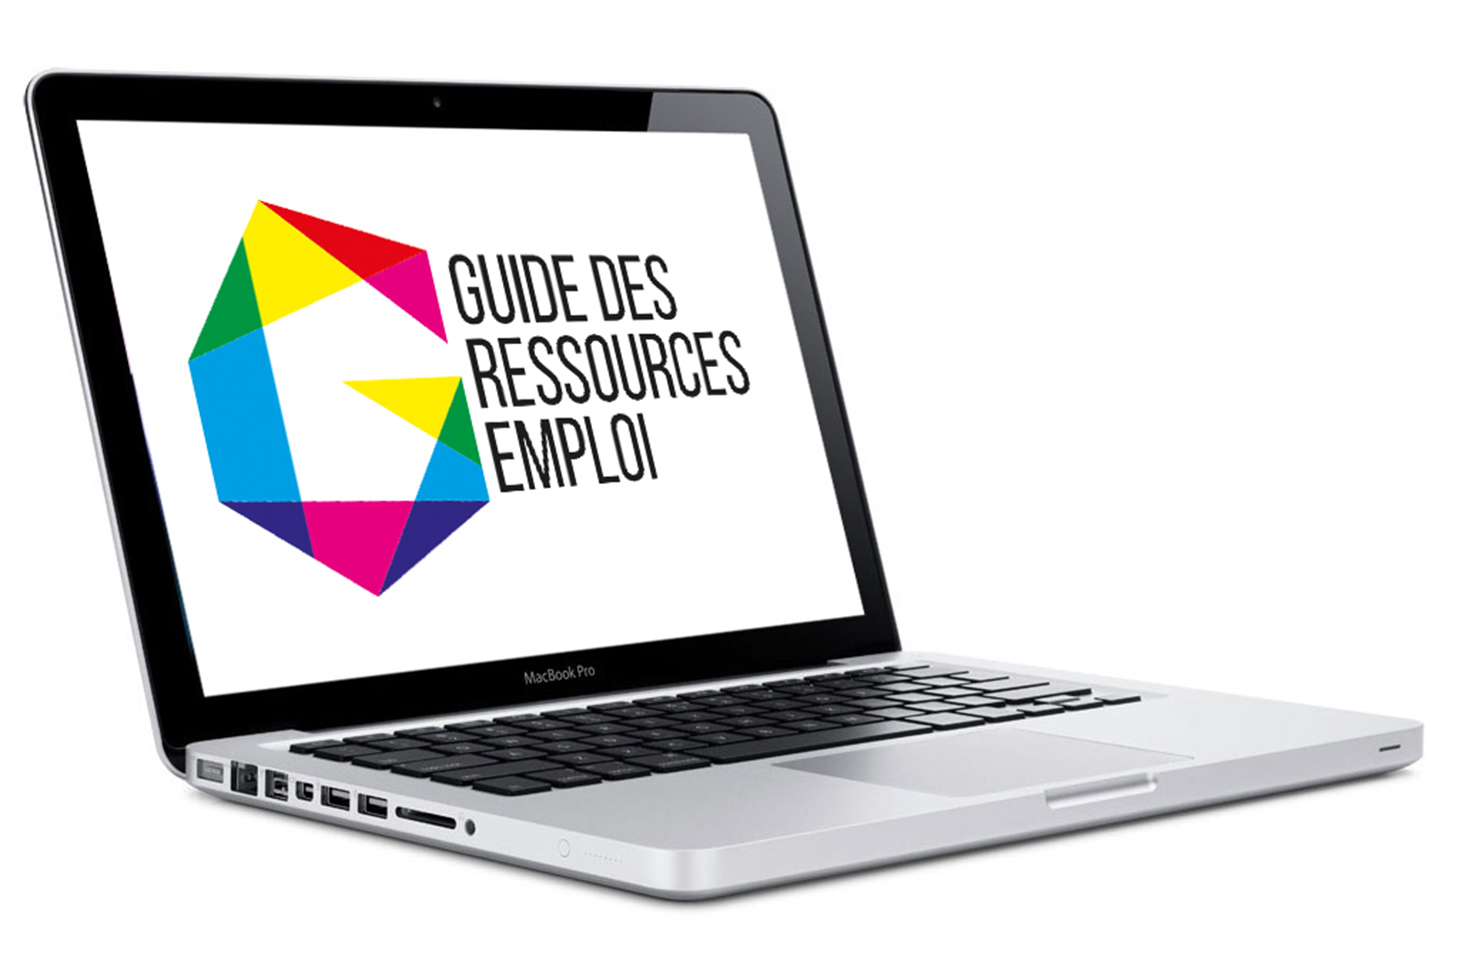 Guide des ressources emploi